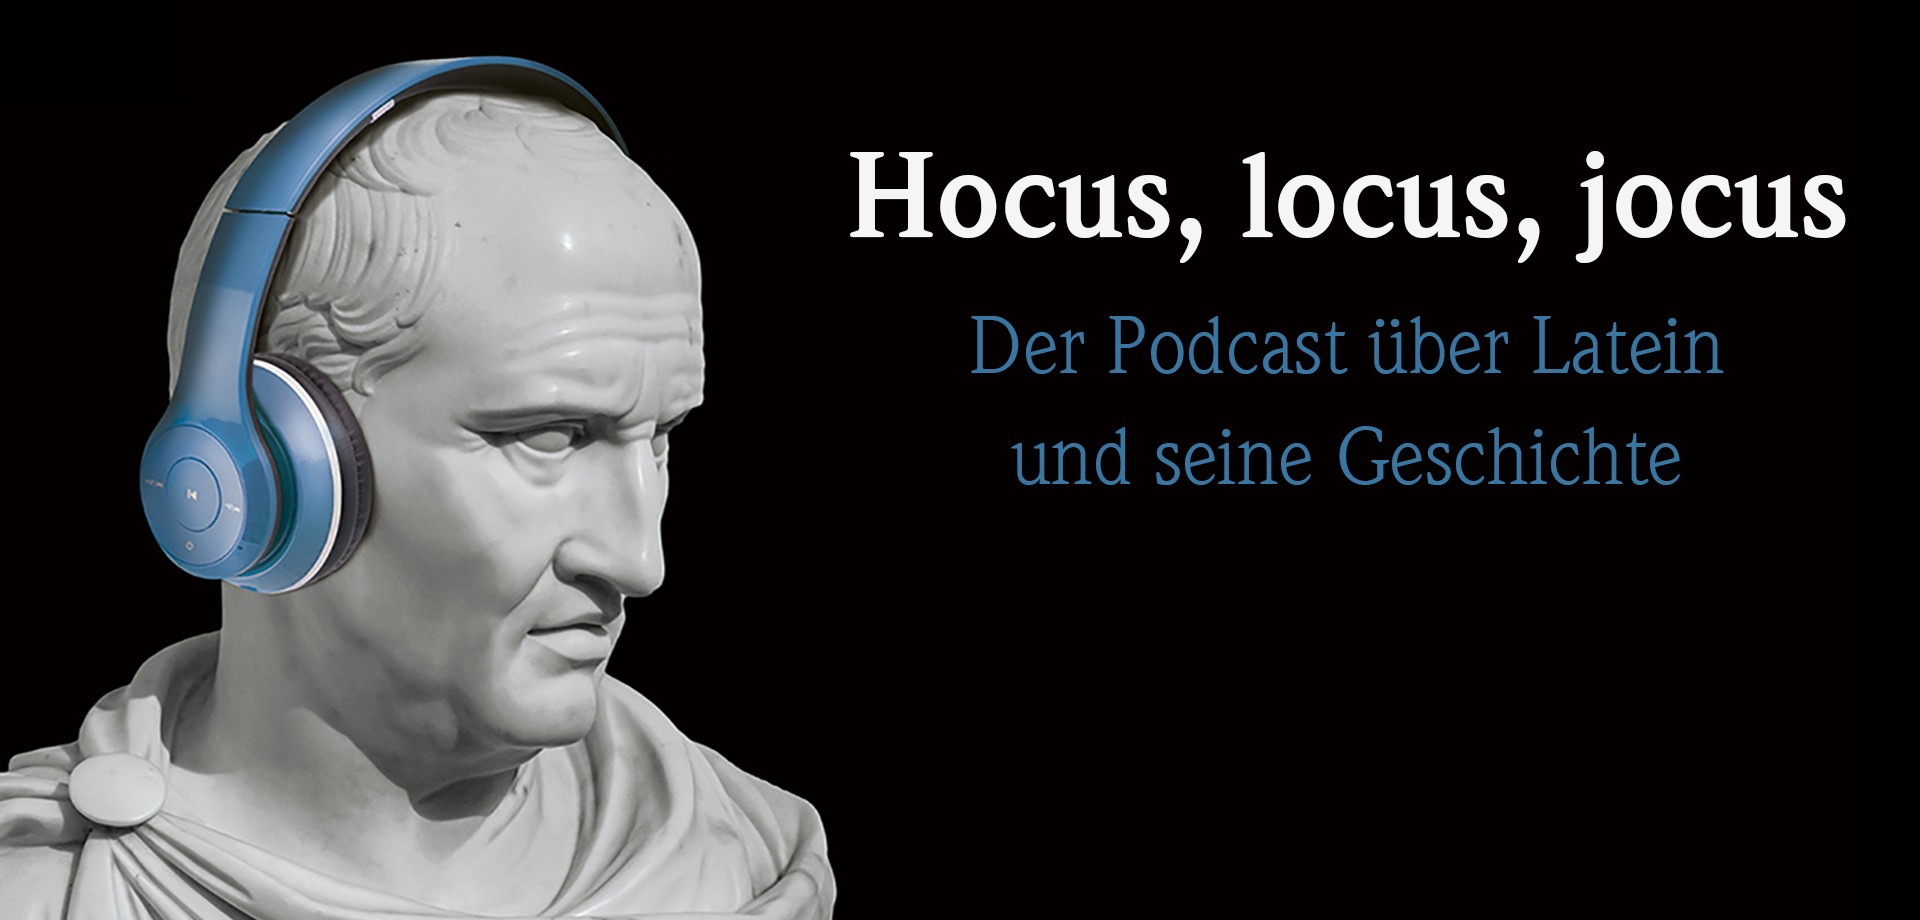 Eine Büste von Marcus Tullius Cicero, die eine blaue Kopfhörer trägt. Daneben ist der Text "Hocus, locus, jocus".